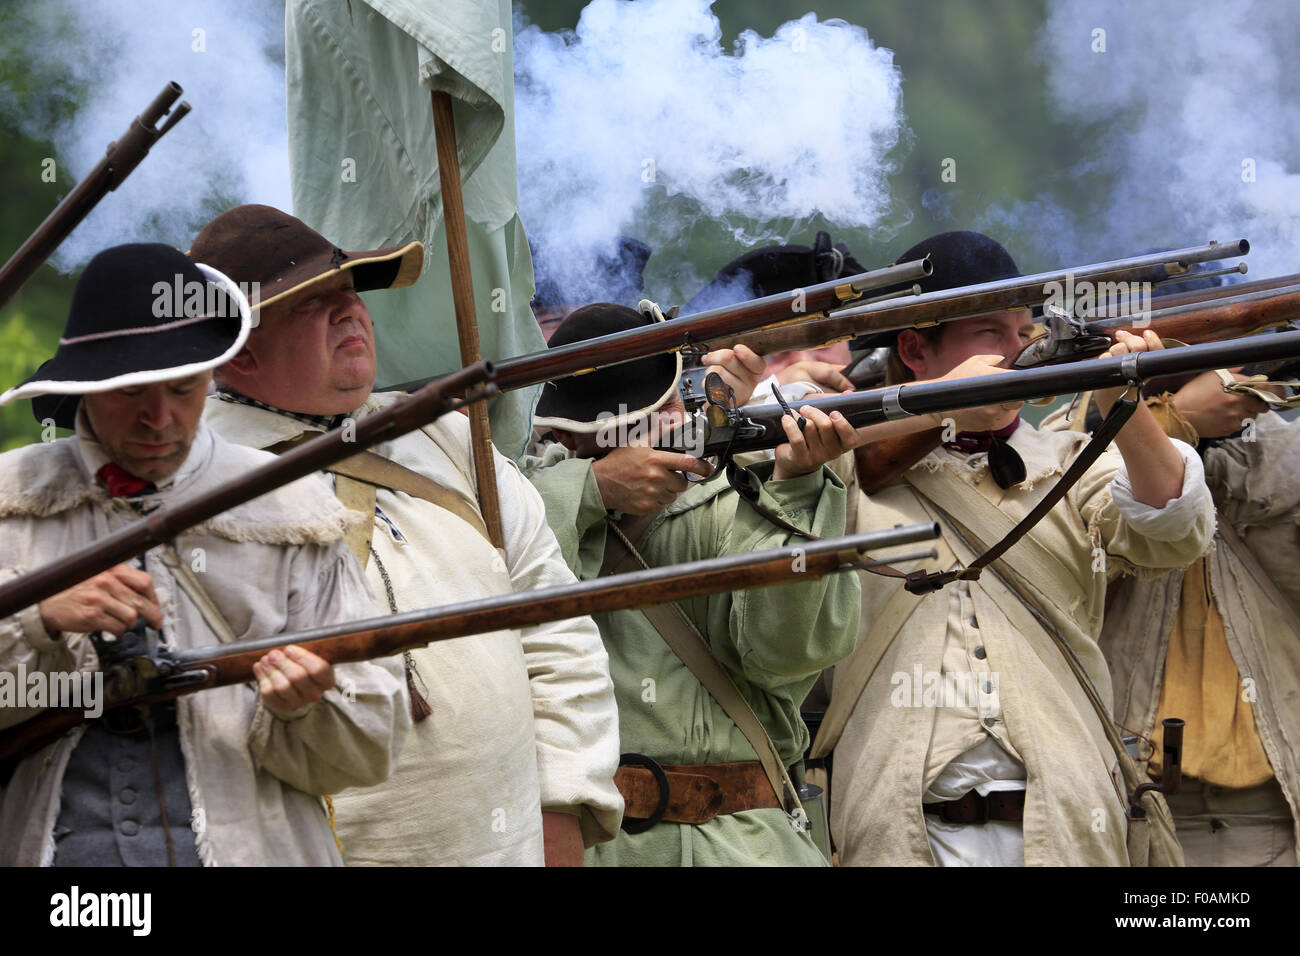 Musket firing at Revolutionary War reenactment at Jockey Hollow Encampment Weekend Morristown New Jersey USA Stock Photo